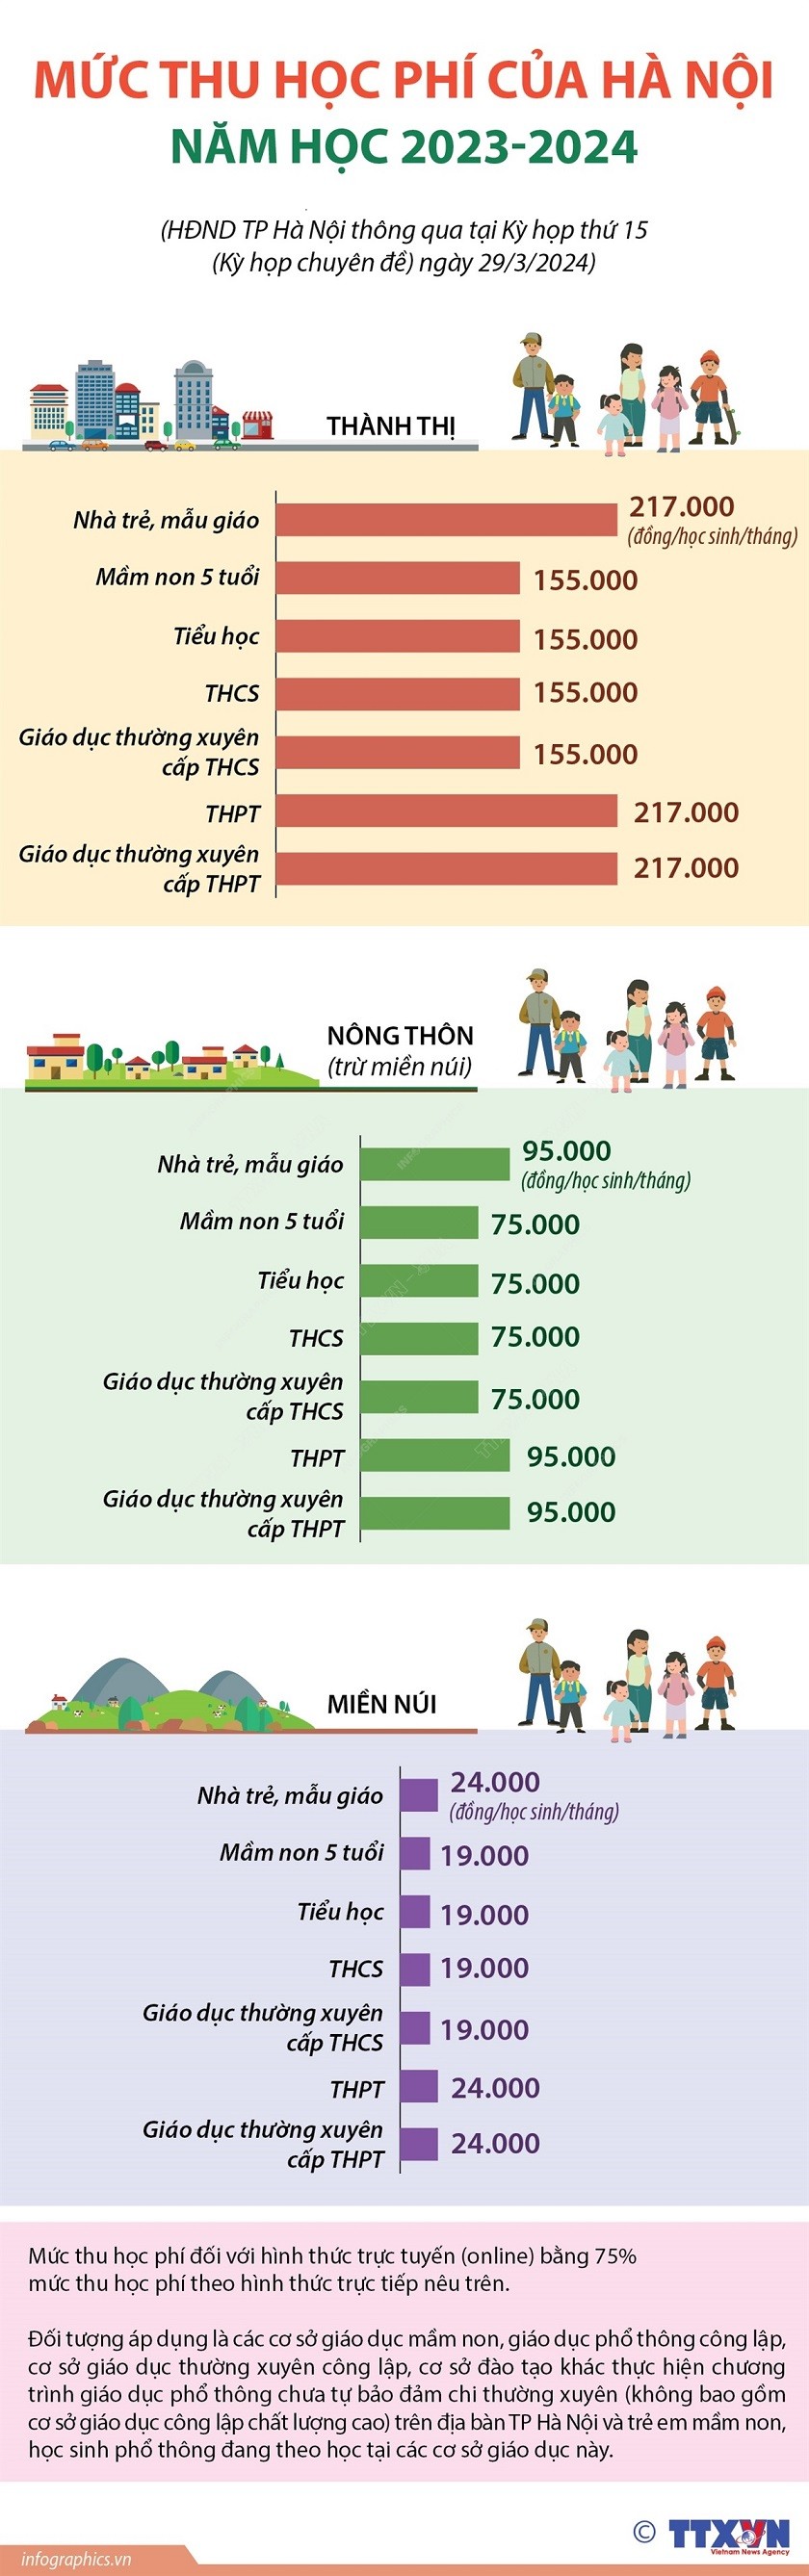 Hà Nội giảm học phí từ năm học 2023-2024